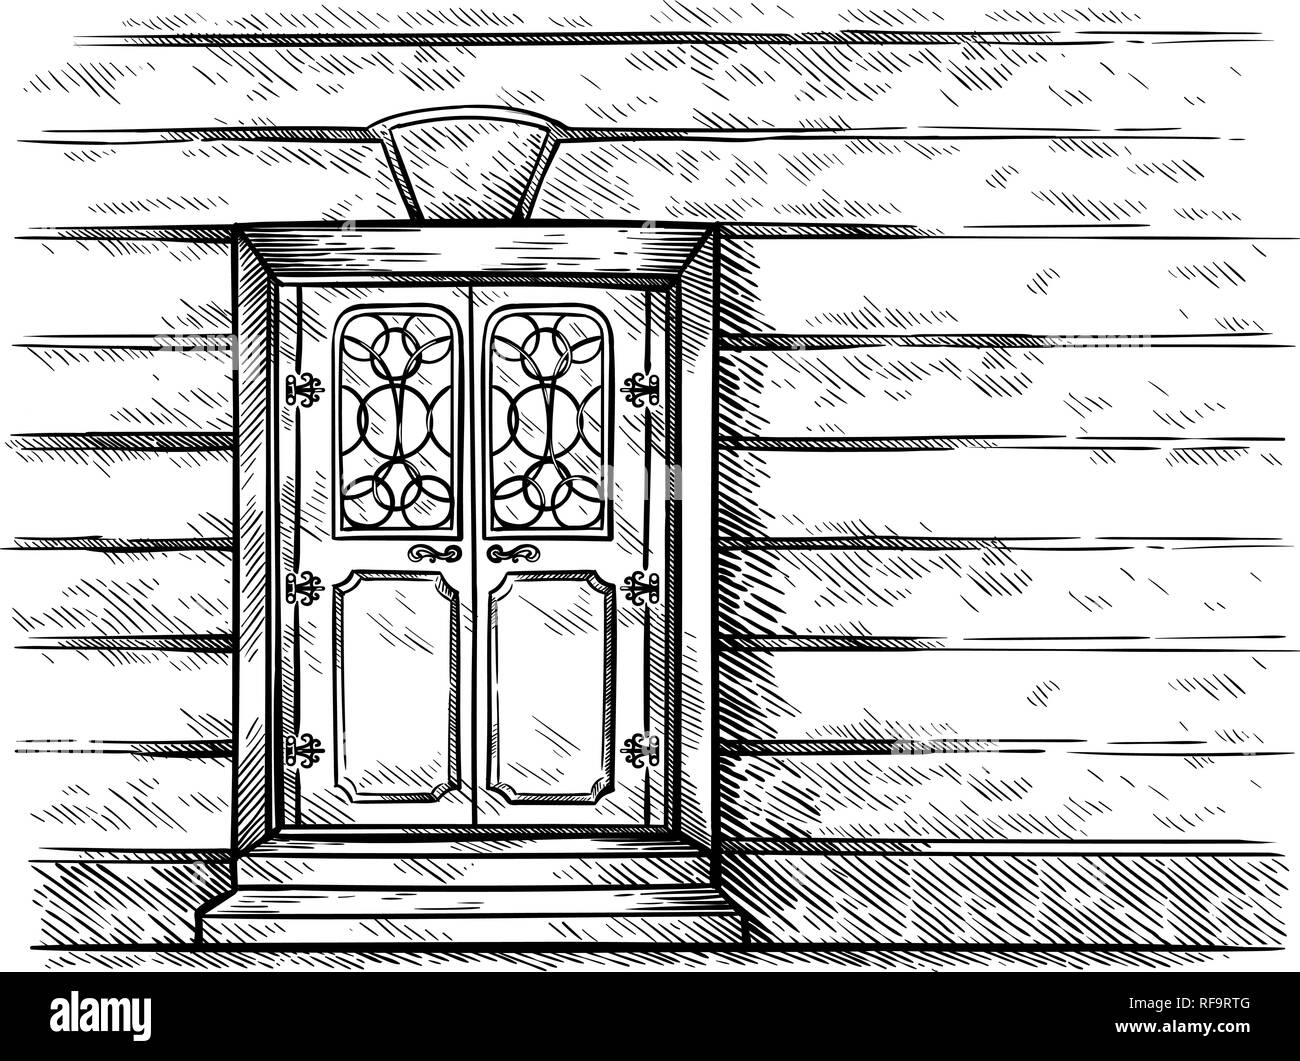 Croquis dibujado a mano antiguo rectangular doble puerta de madera en la  pared ilustración vectorial Imagen Vector de stock - Alamy